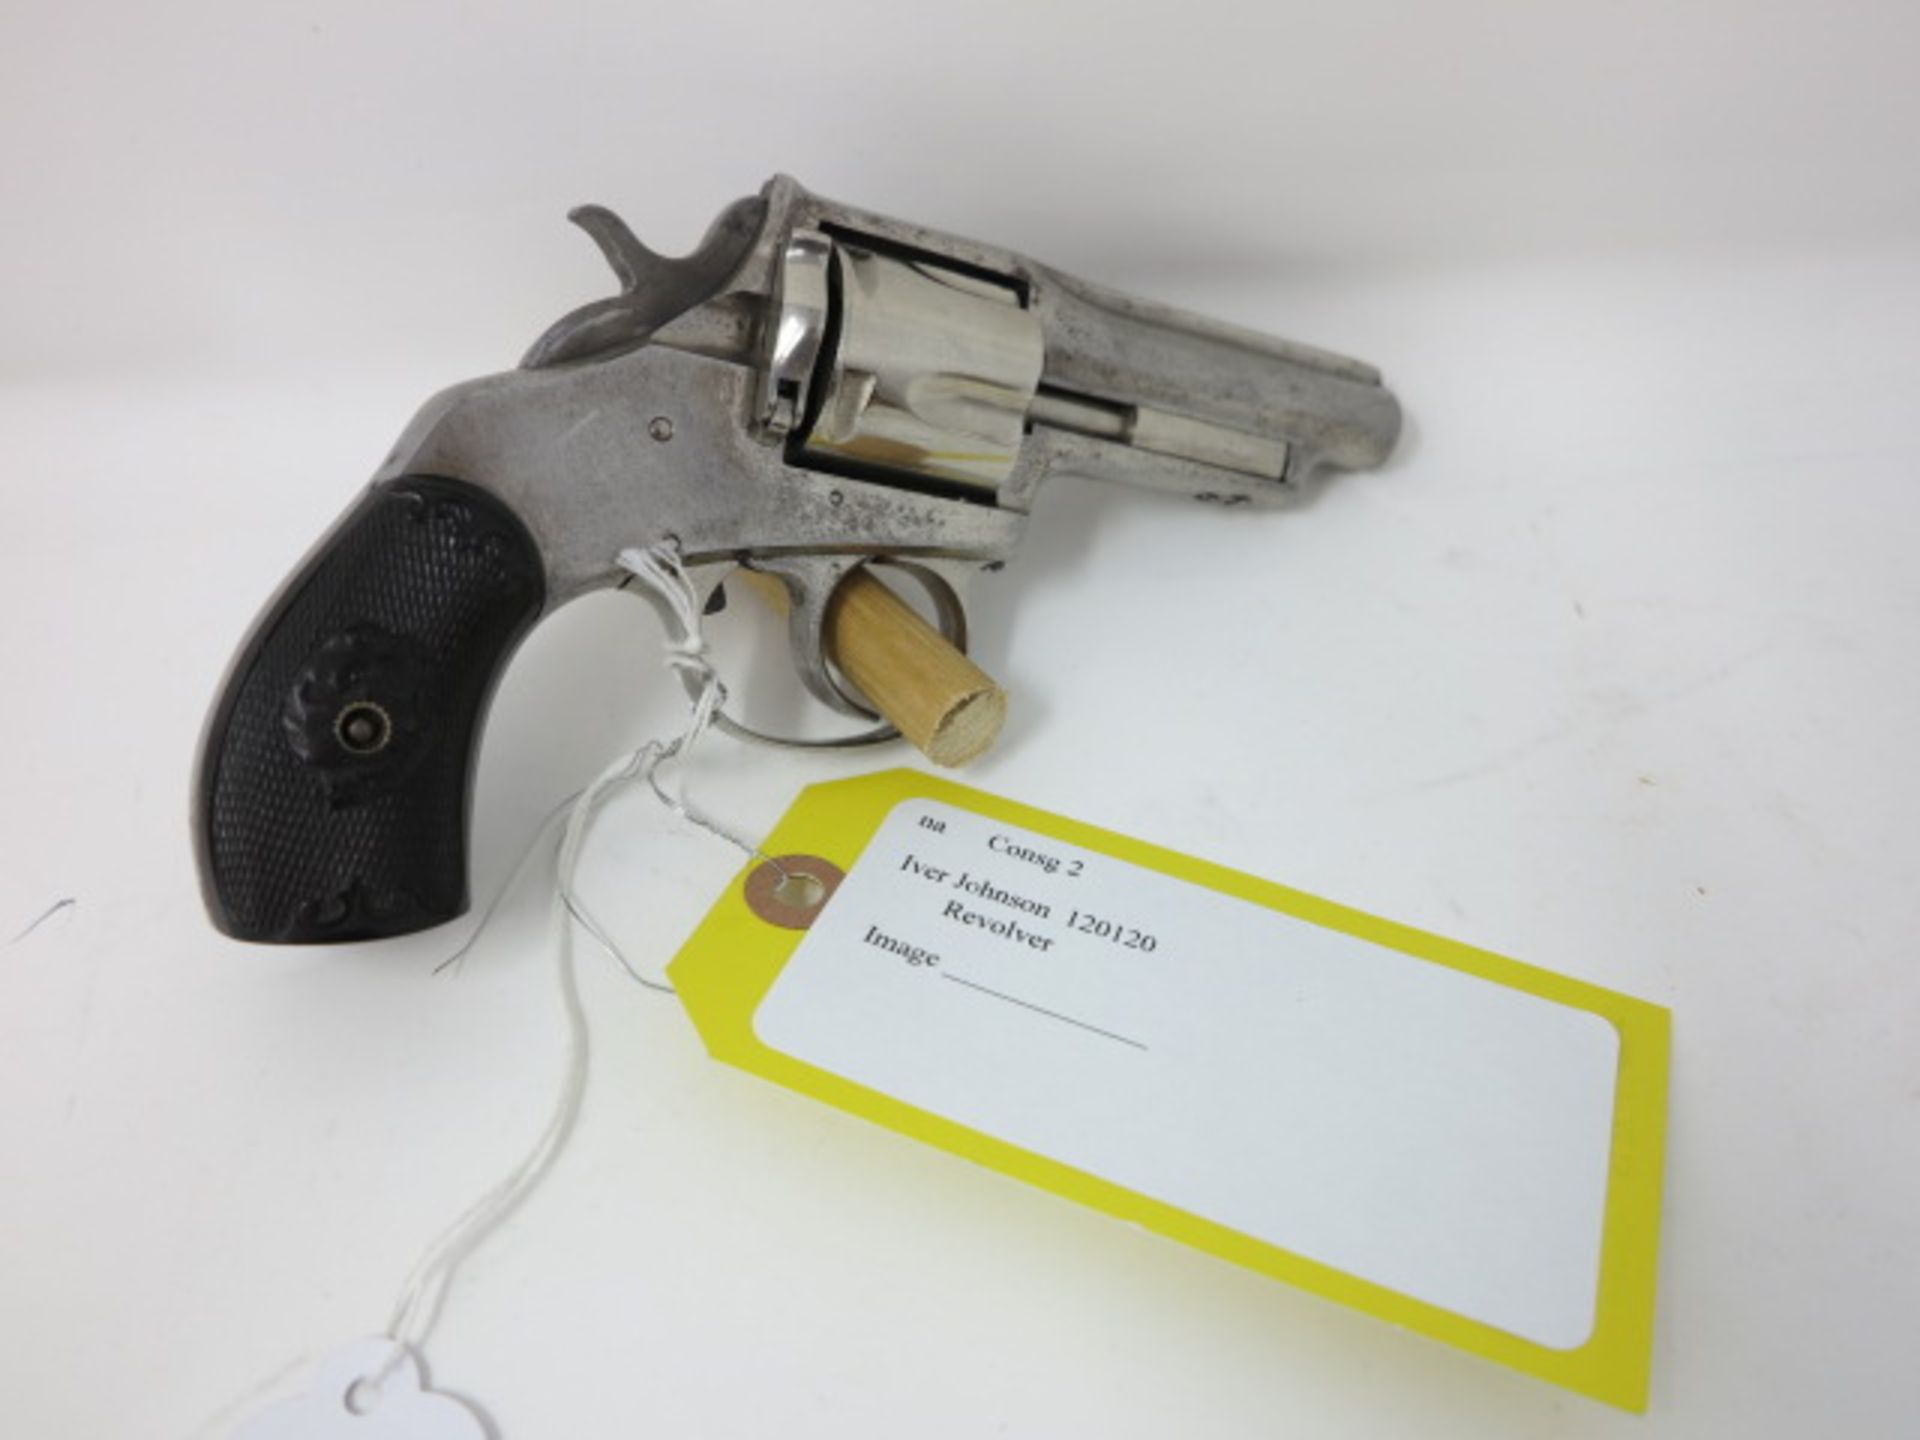 Iver Johnson Revolver, S/N 120120